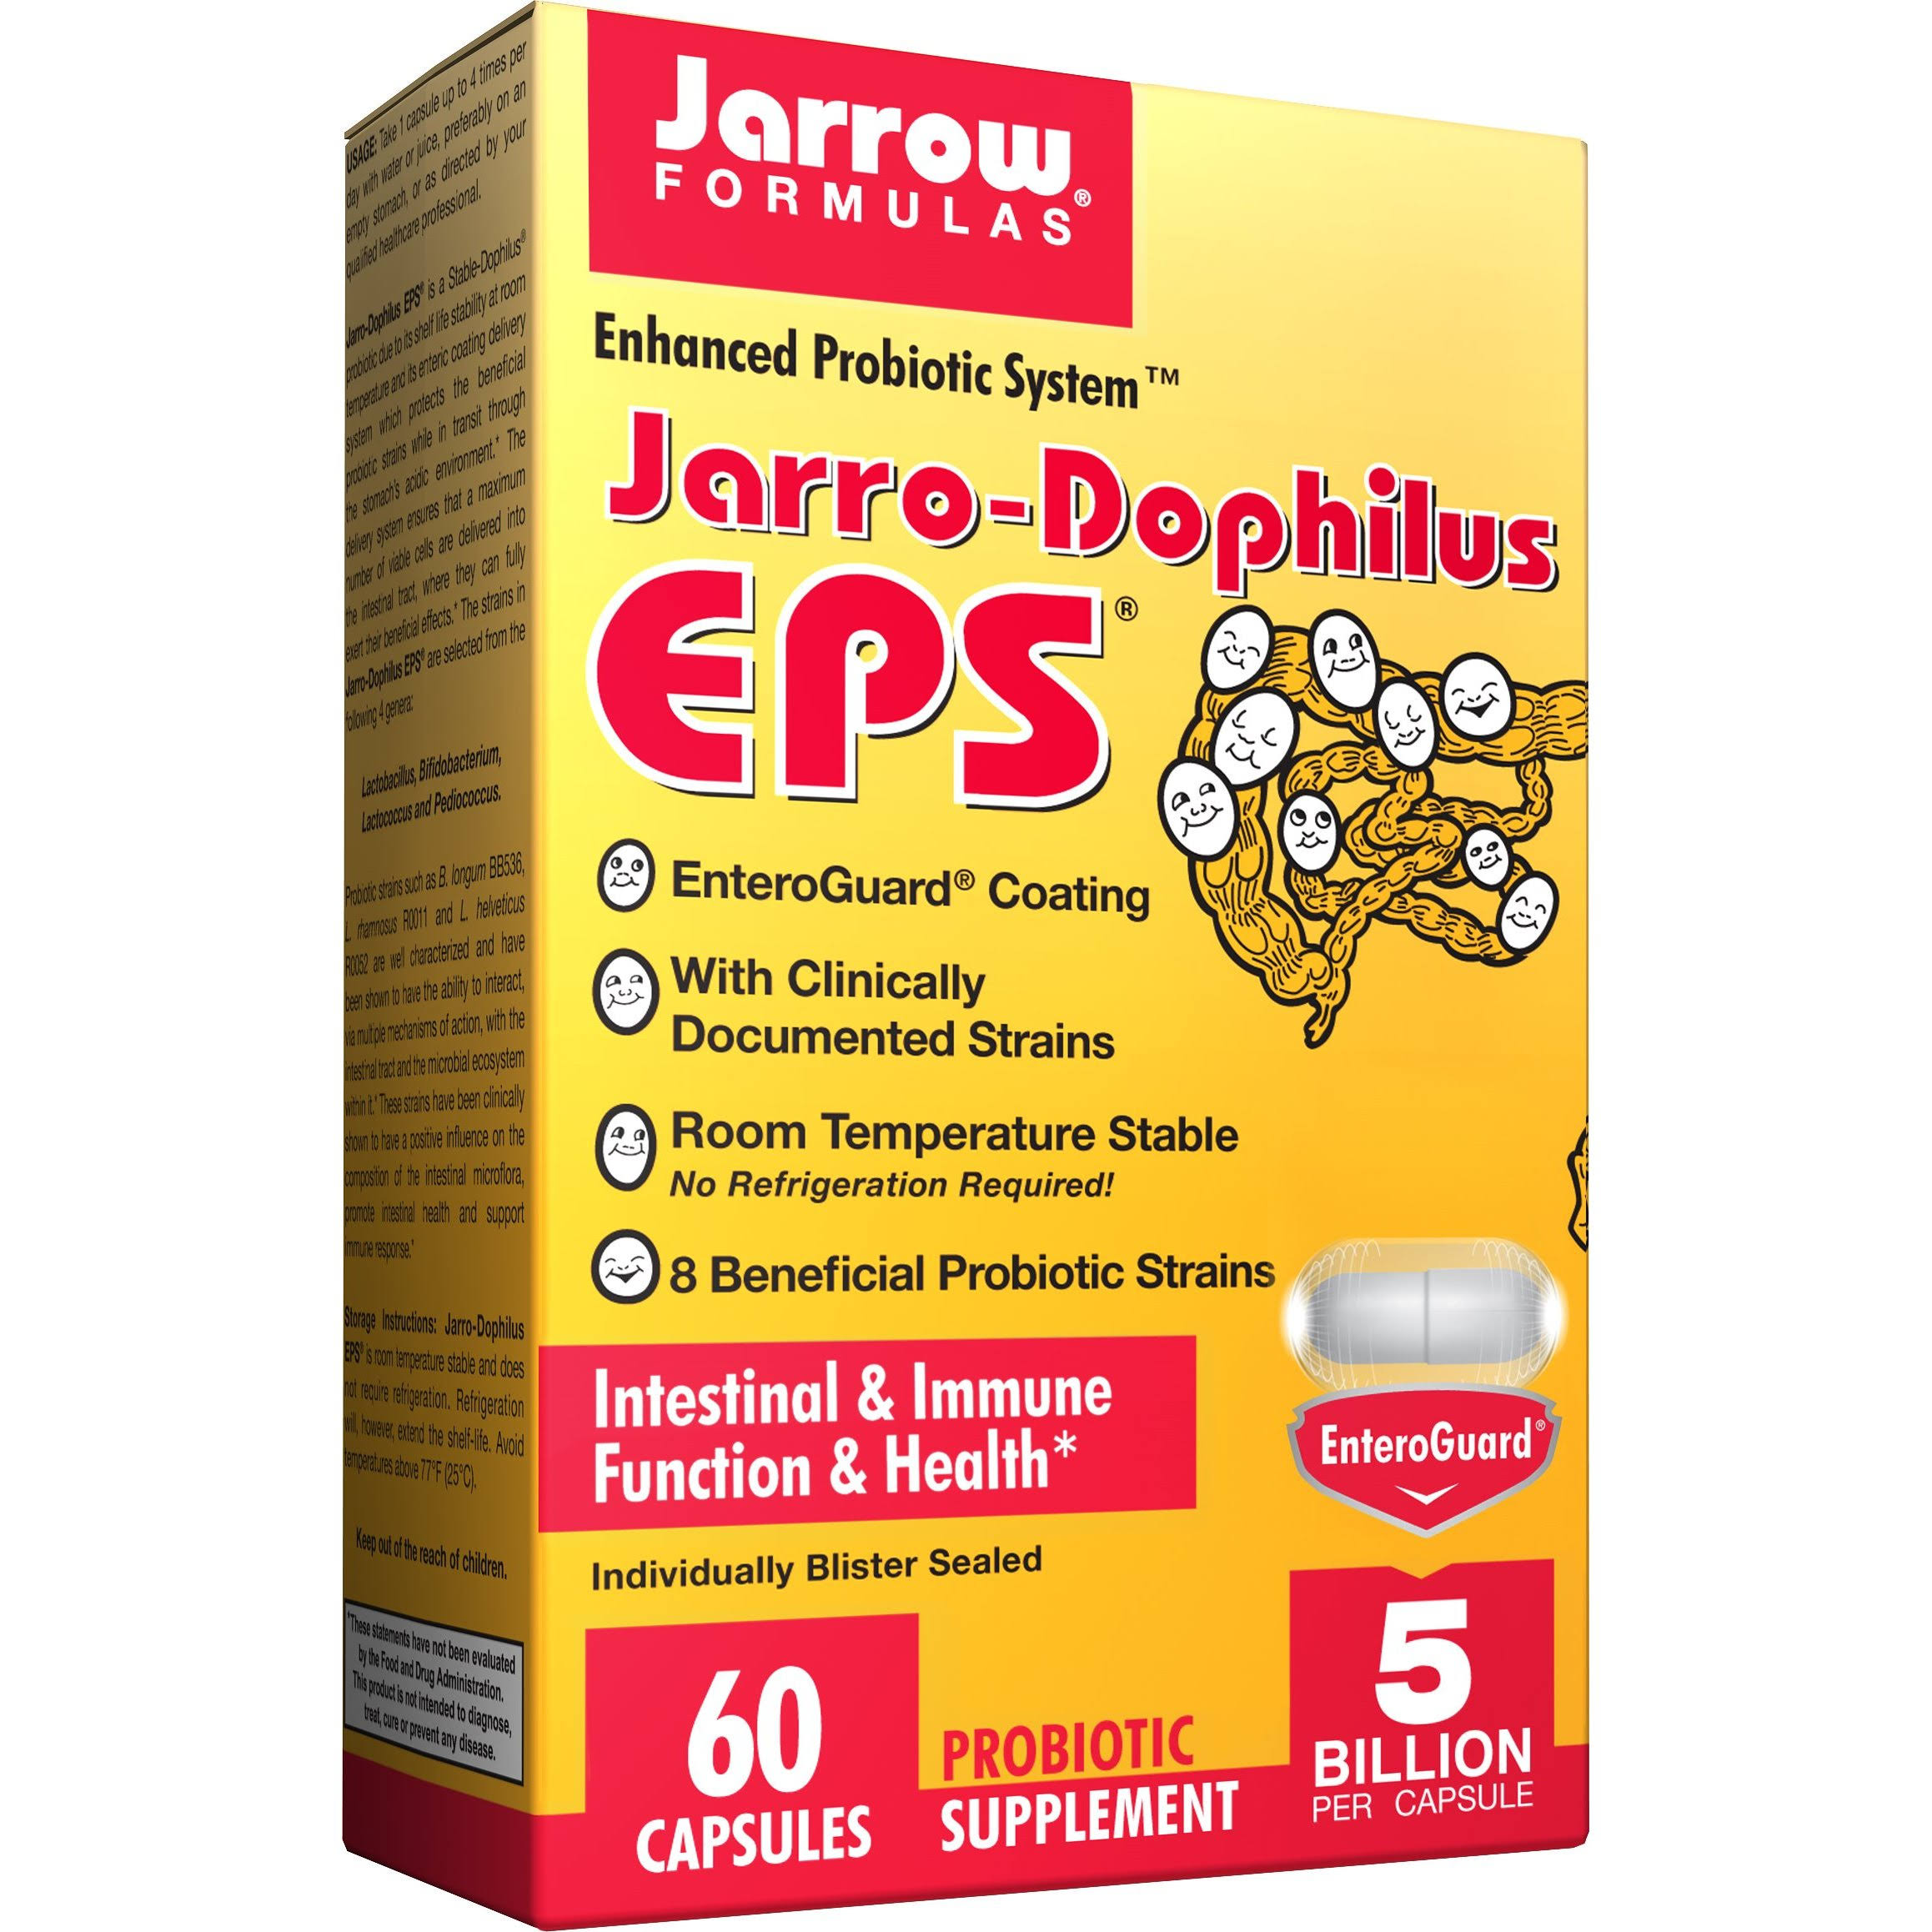 Jarrow Formulas Jarro-Dophilus EPS Probiotic Supplement - 60 Capsules